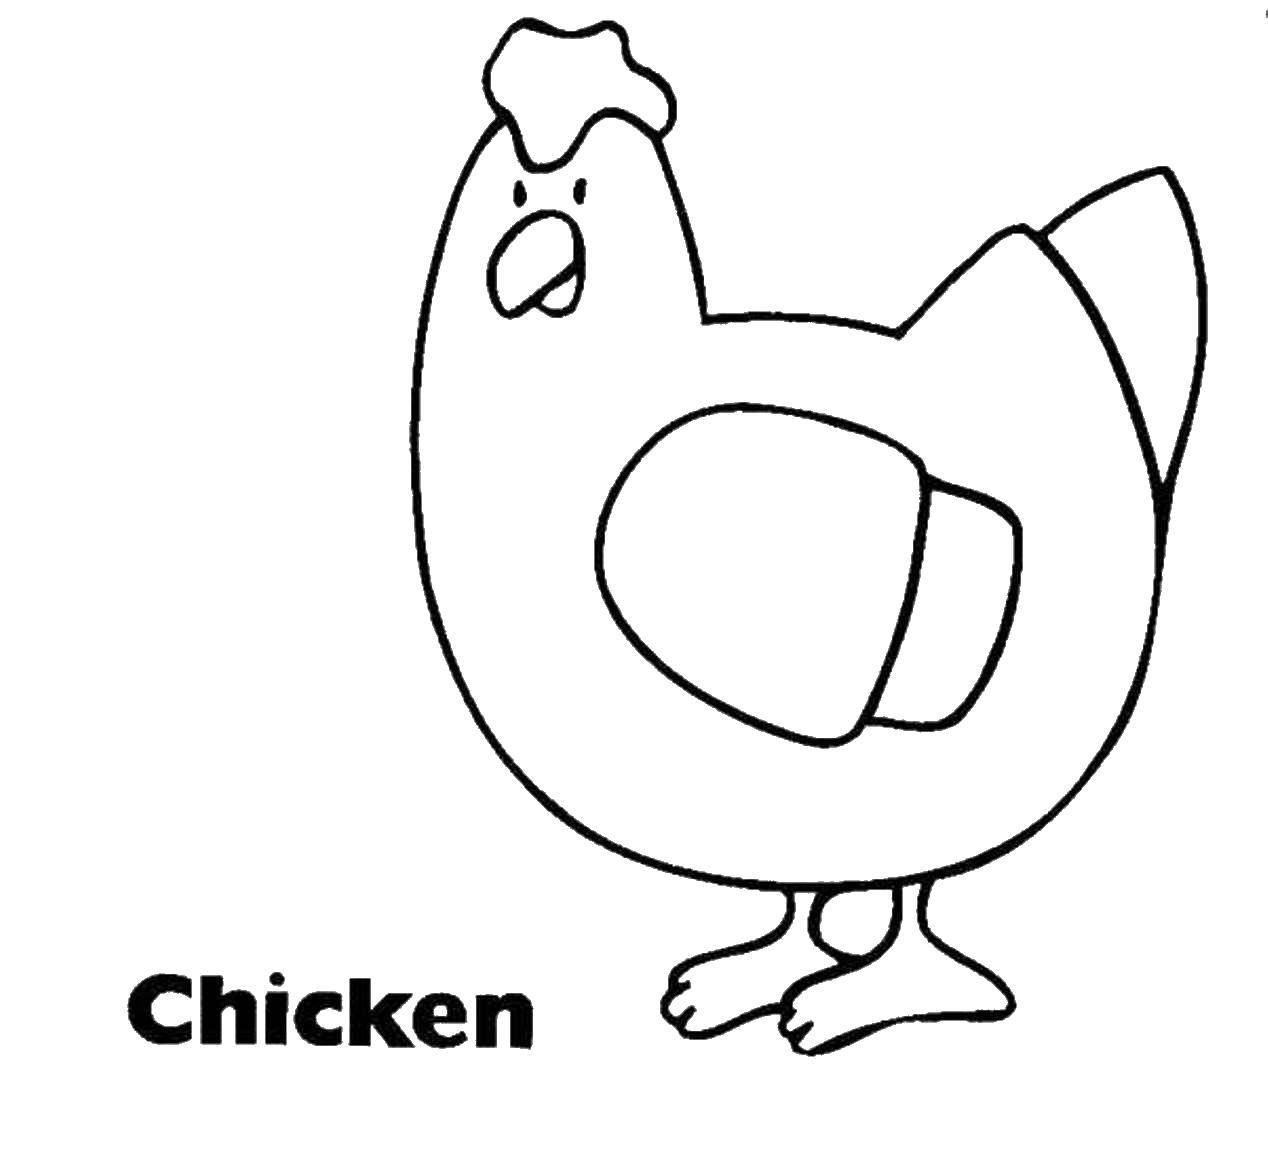 Название: Раскраска Курочка. Категория: Раскраски для малышей. Теги: Птицы, курица.